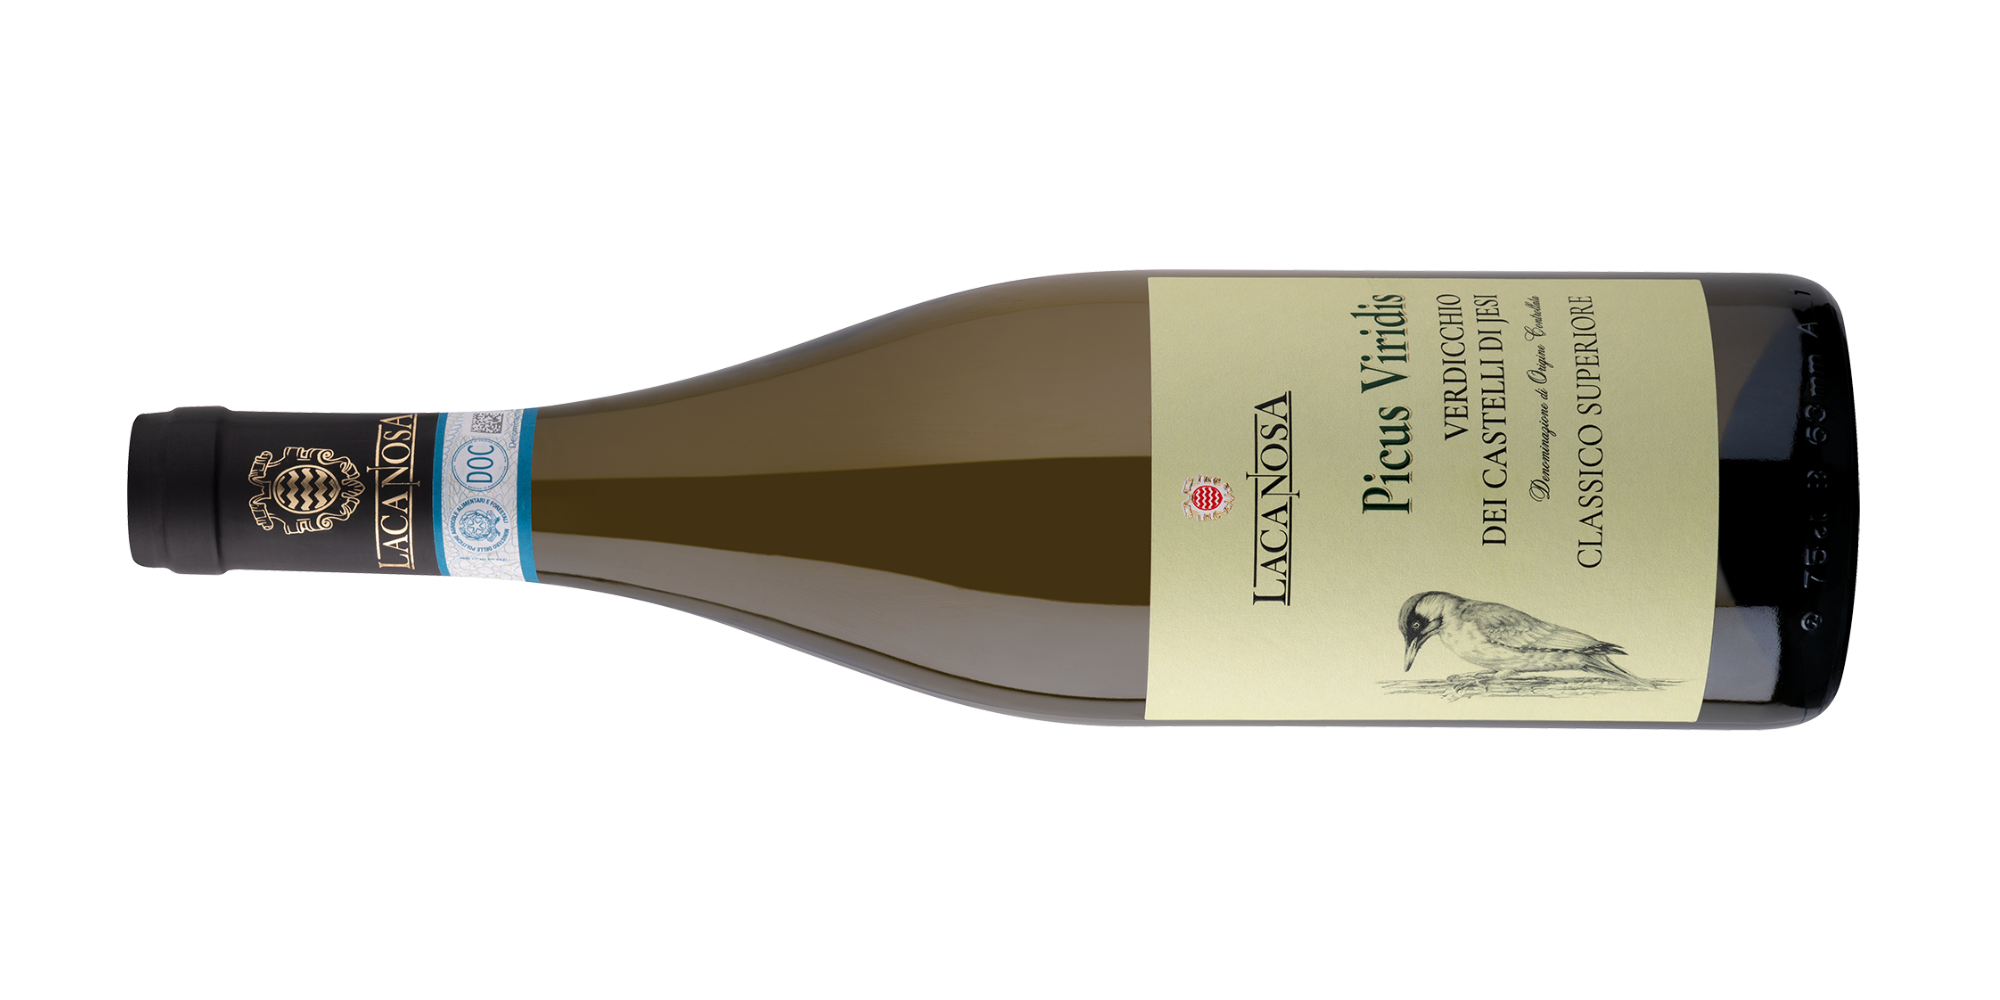 Linea La Canosa - Vino Bianco di alta qualità - Picus Viridis - Verdicchio dei castelli di Jesi Classico Superiore DOC